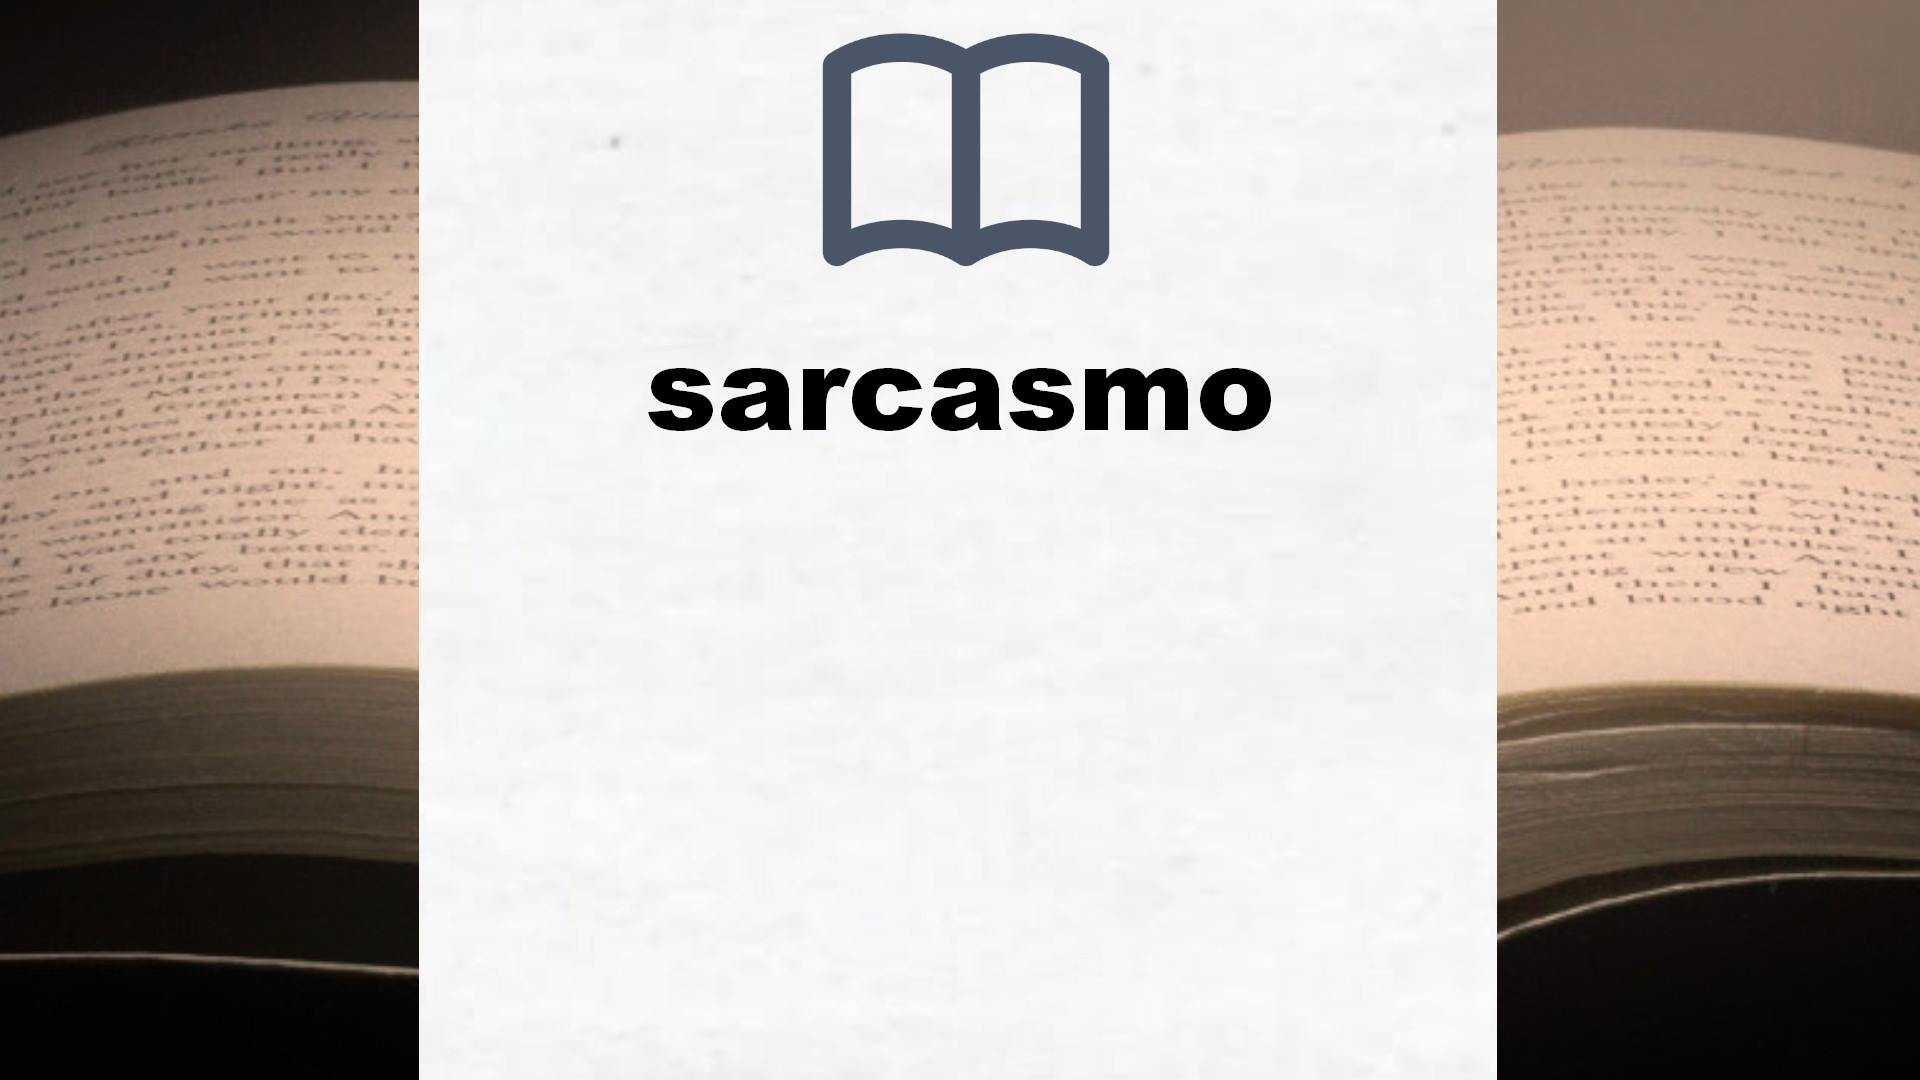 Libros sobre sarcasmo